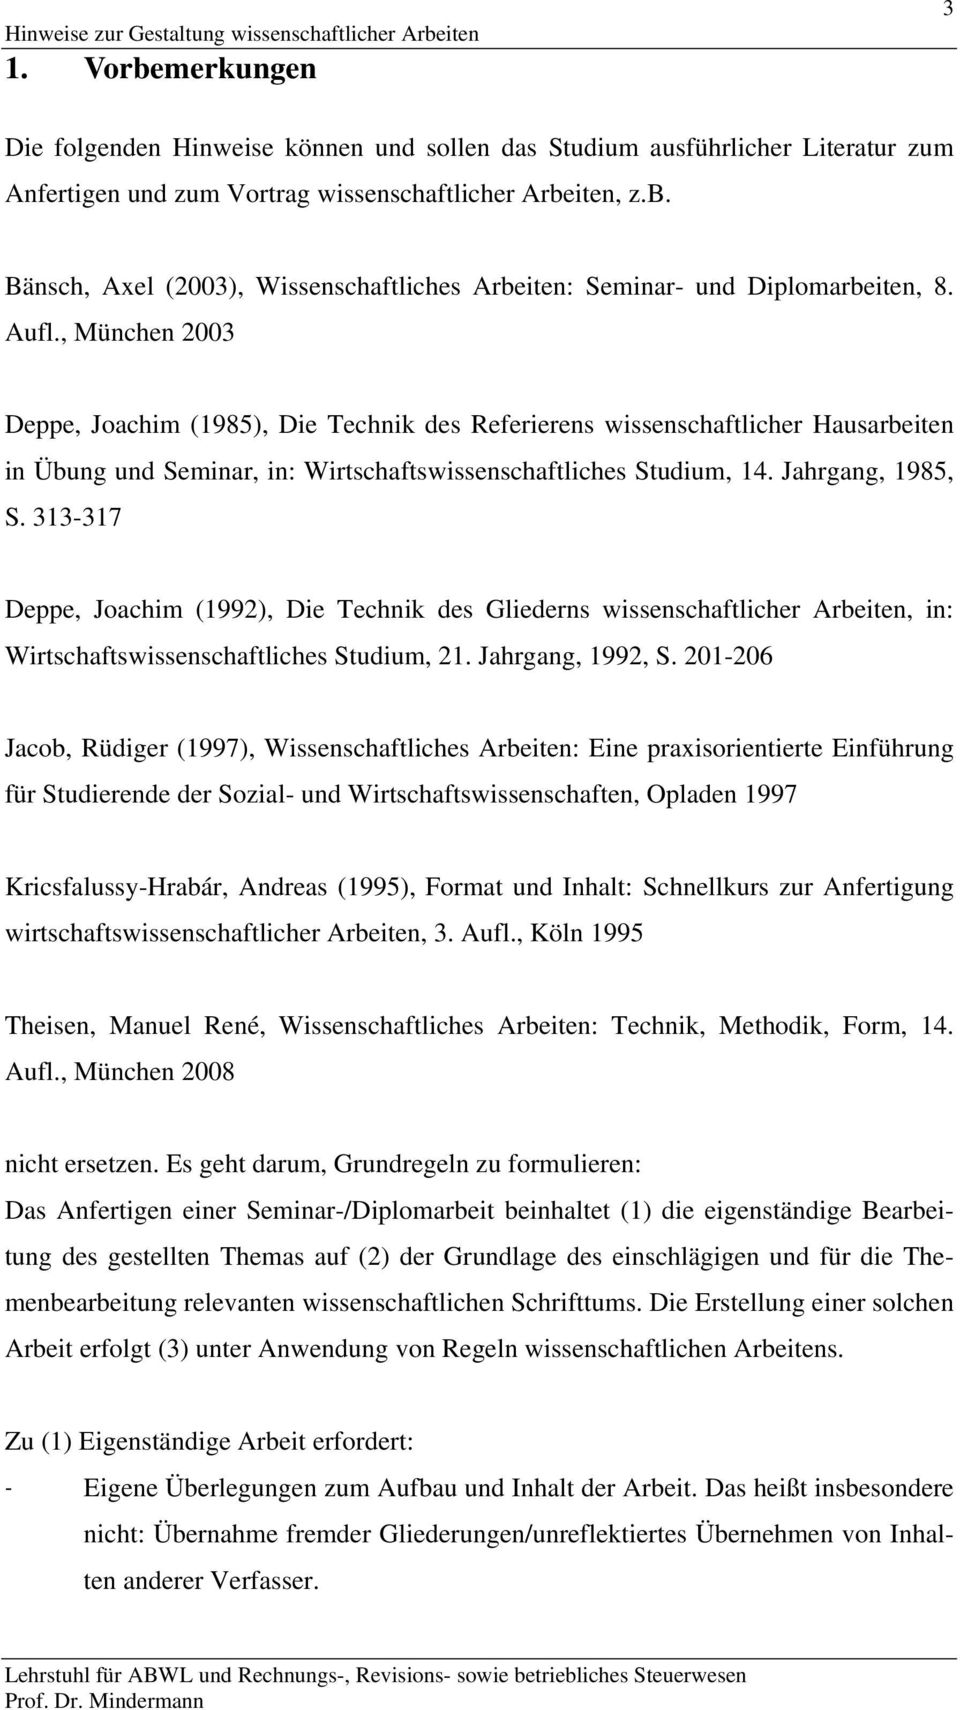 Aufl., München 2003 Deppe, Joachim (1985), Die Technik des Referierens wissenschaftlicher Hausarbeiten in Übung und Seminar, in: Wirtschaftswissenschaftliches Studium, 14. Jahrgang, 1985, S.